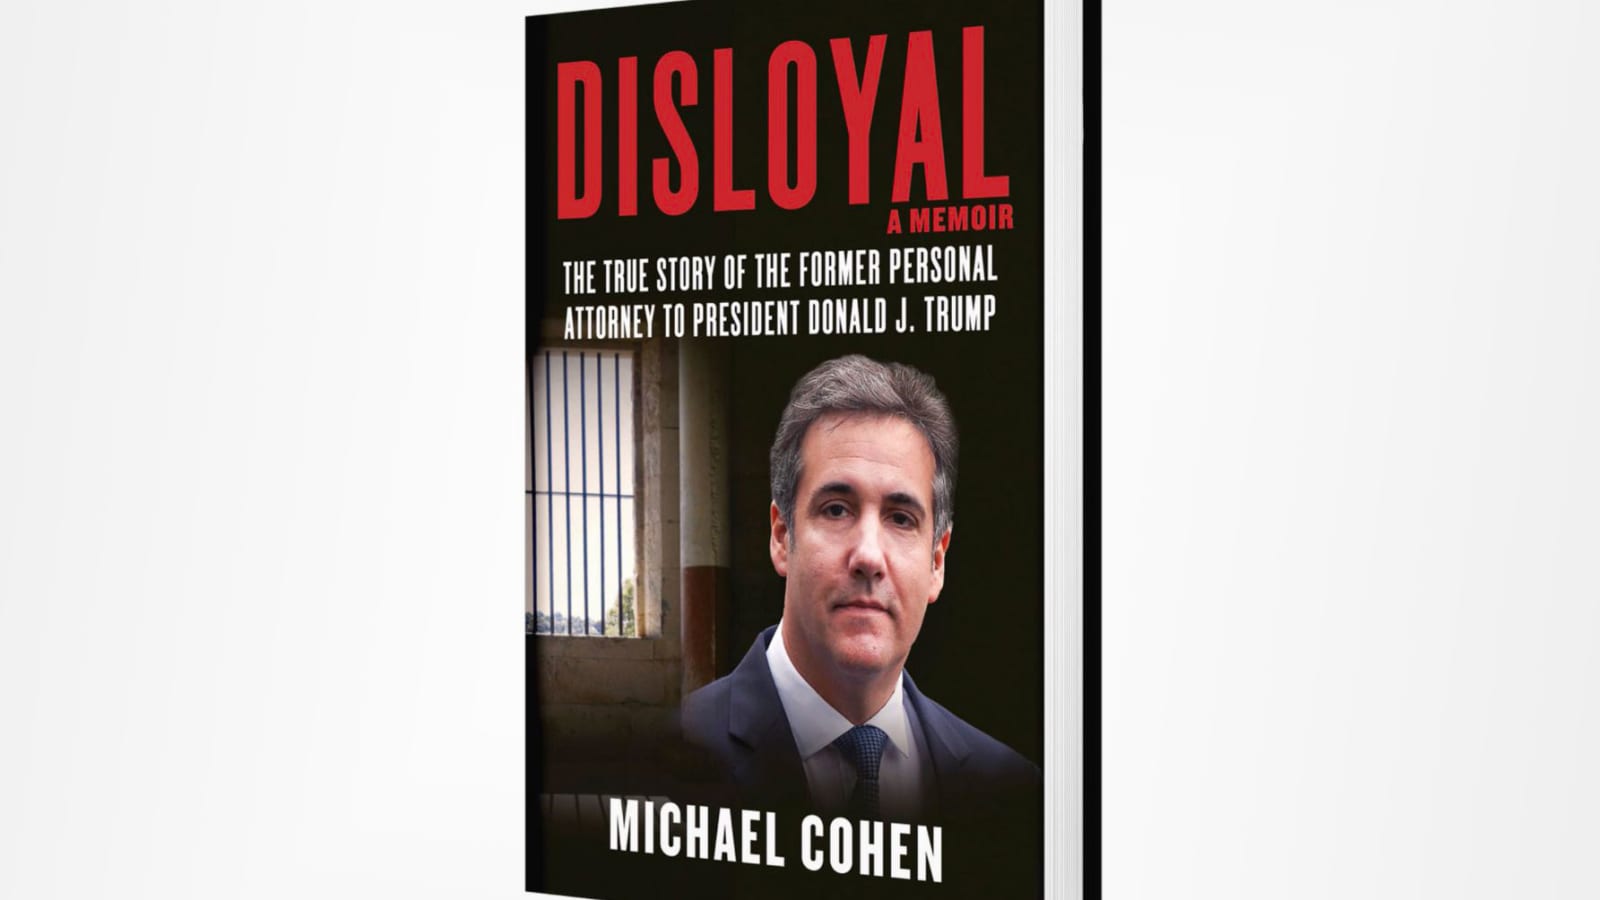 Michael Cohen book on Trump discusses Russia, Vegas sex club, Melania